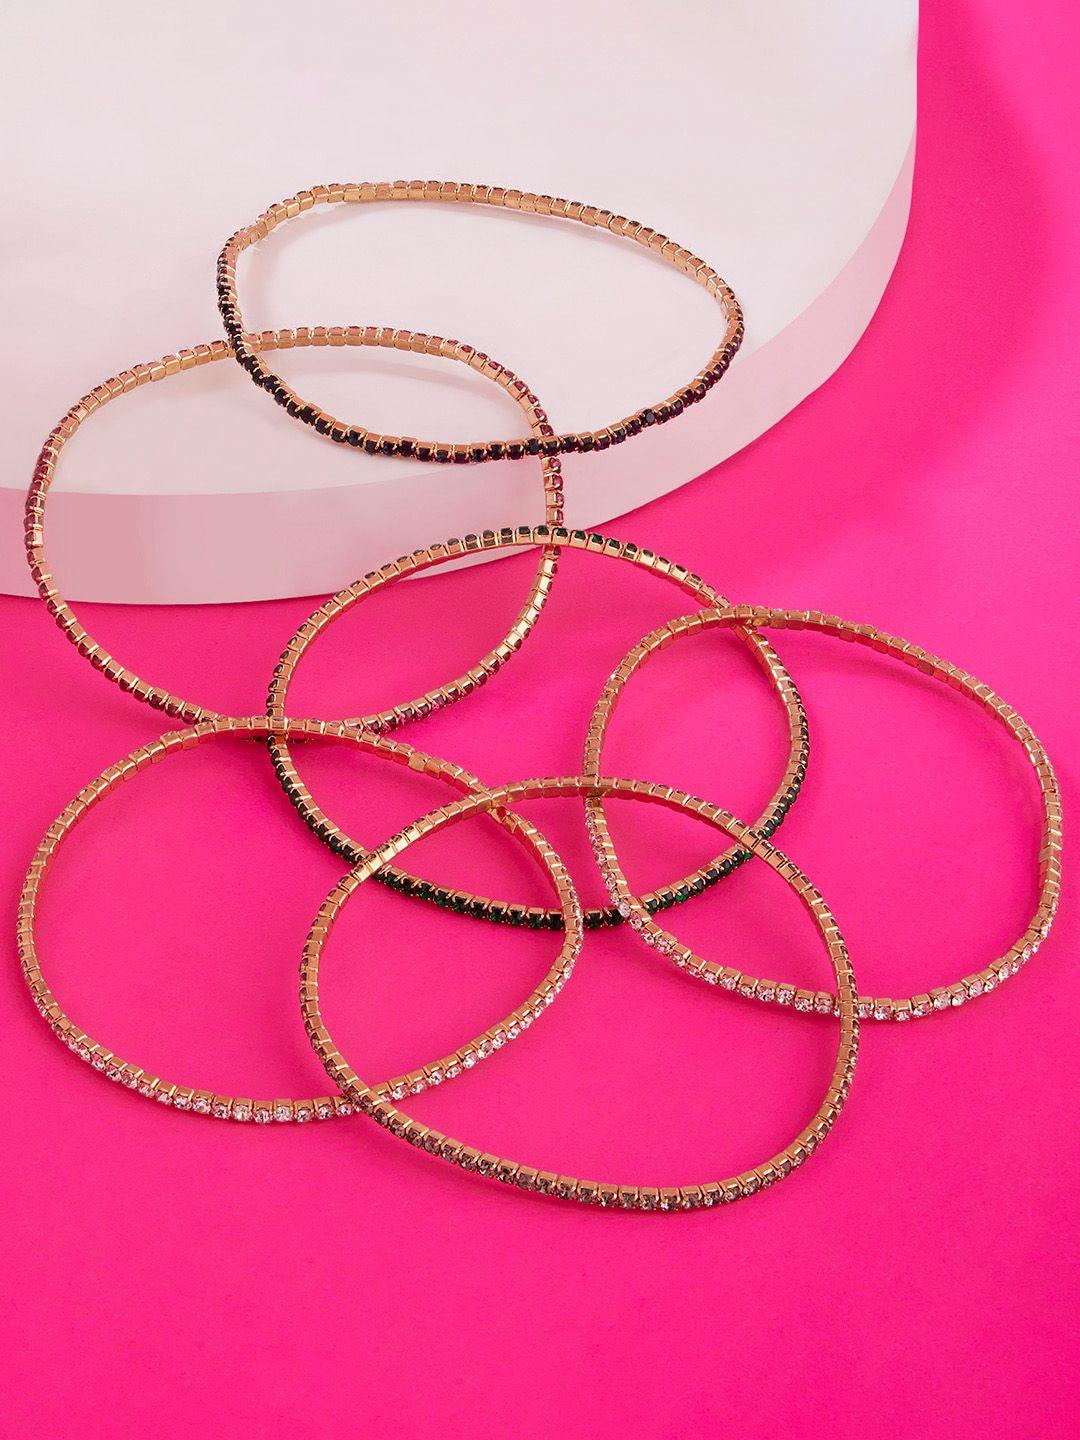 accessorize women set of 6 stone-studded bracelets